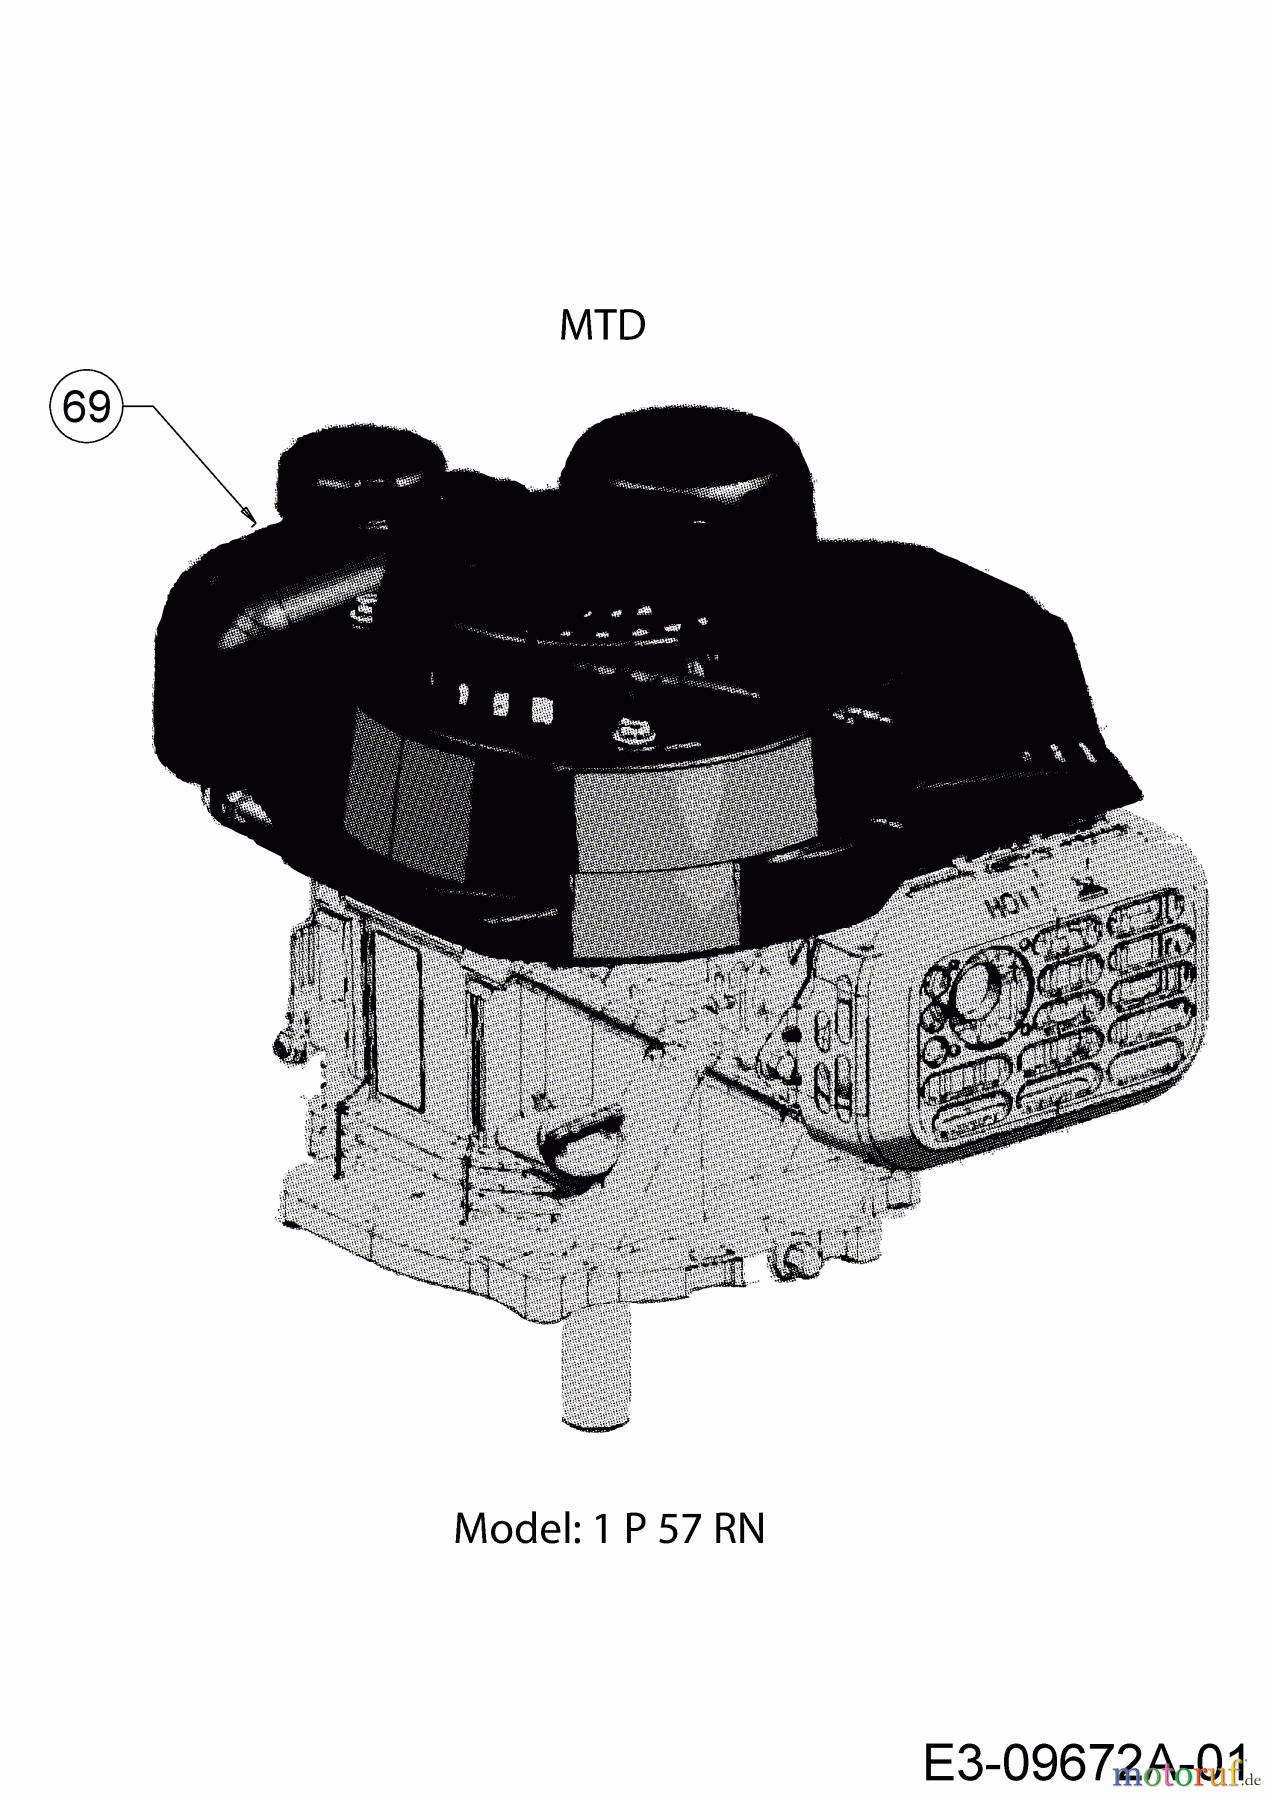  MTD Motormäher Smart 51 BO 11B-02SH600 (2019) Motor MTD